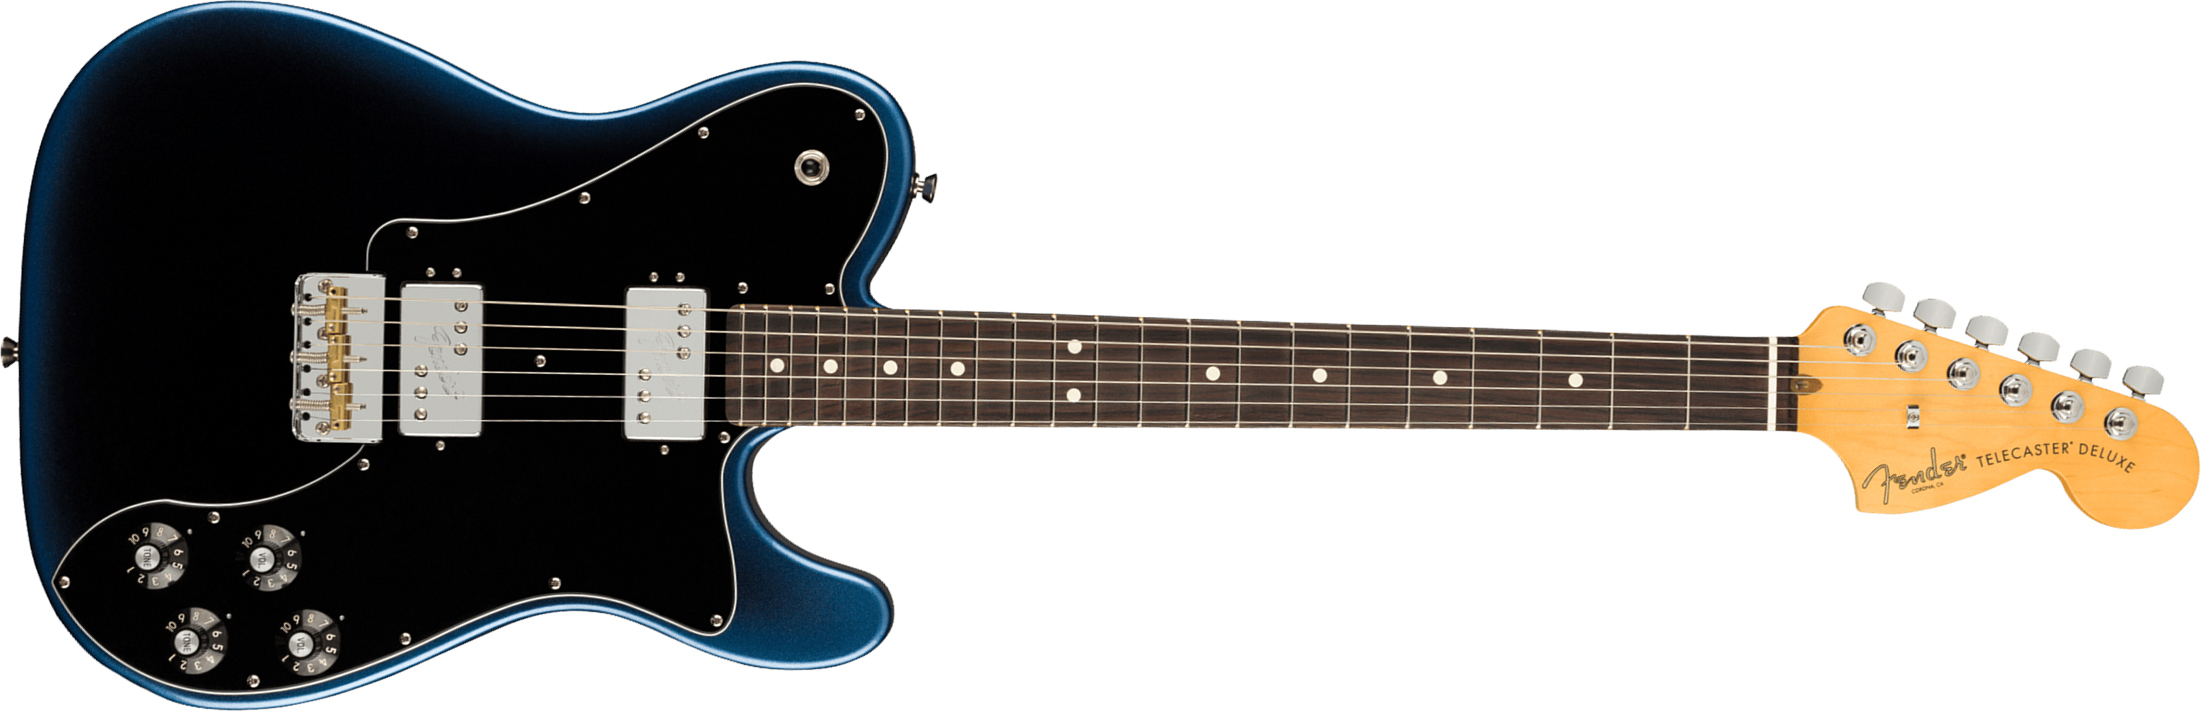 Fender Tele Deluxe American Professional Ii Usa Rw - Dark Night - E-Gitarre in Teleform - Main picture